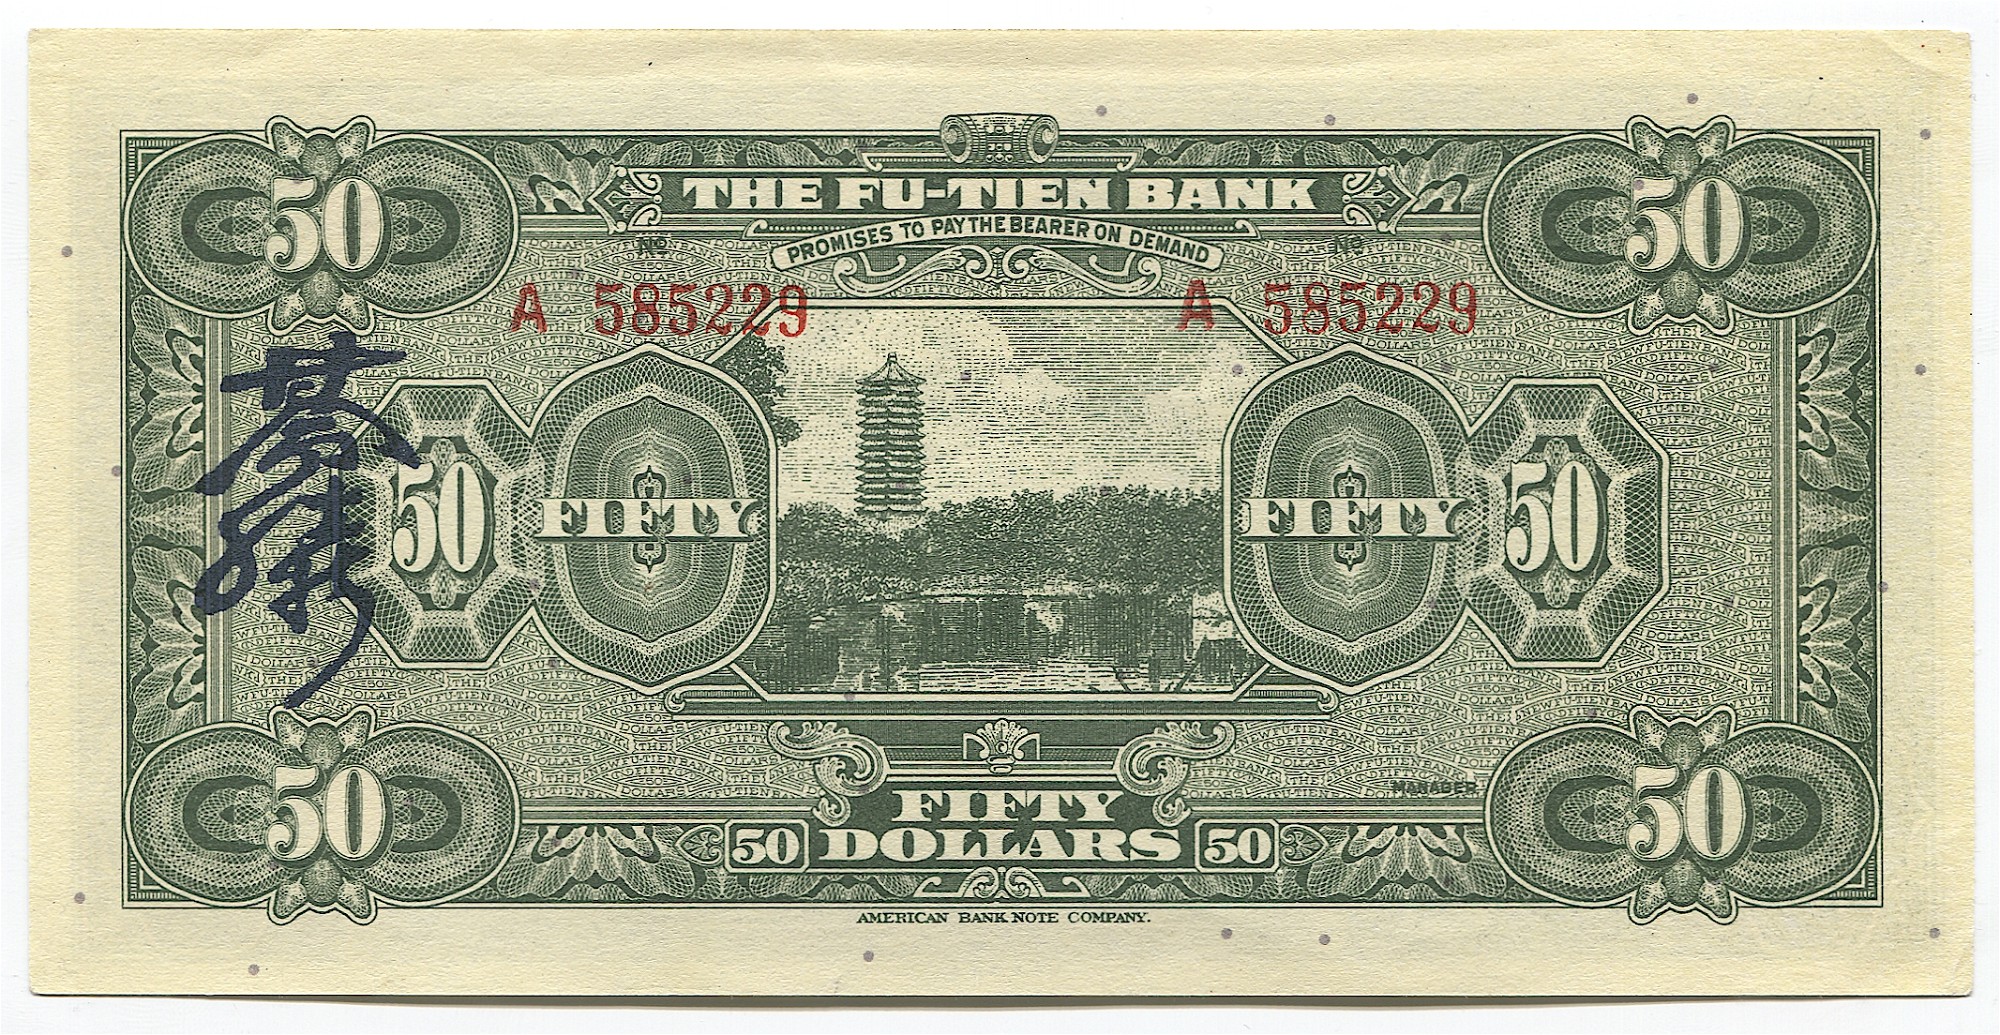 Первые 50 банков. Китай доллар 1929 год. The Fu-tien Bank банкноты. Доллар бумажка 1970г. Доллар синего цвета 1949.